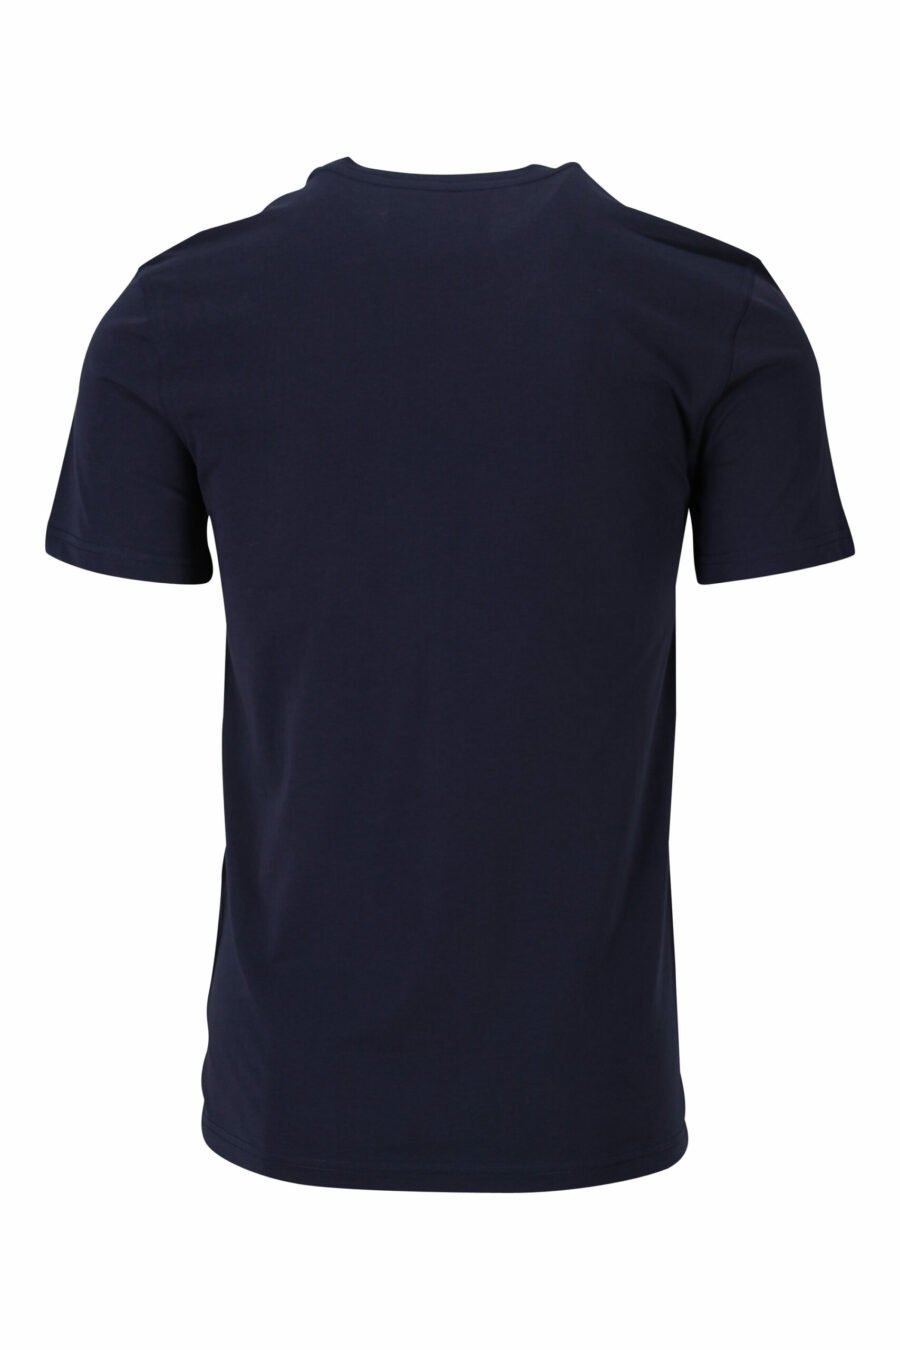 Dunkelblaues T-Shirt mit "teddy" maßgeschneidert maxilogo - 667113124827 1 skaliert